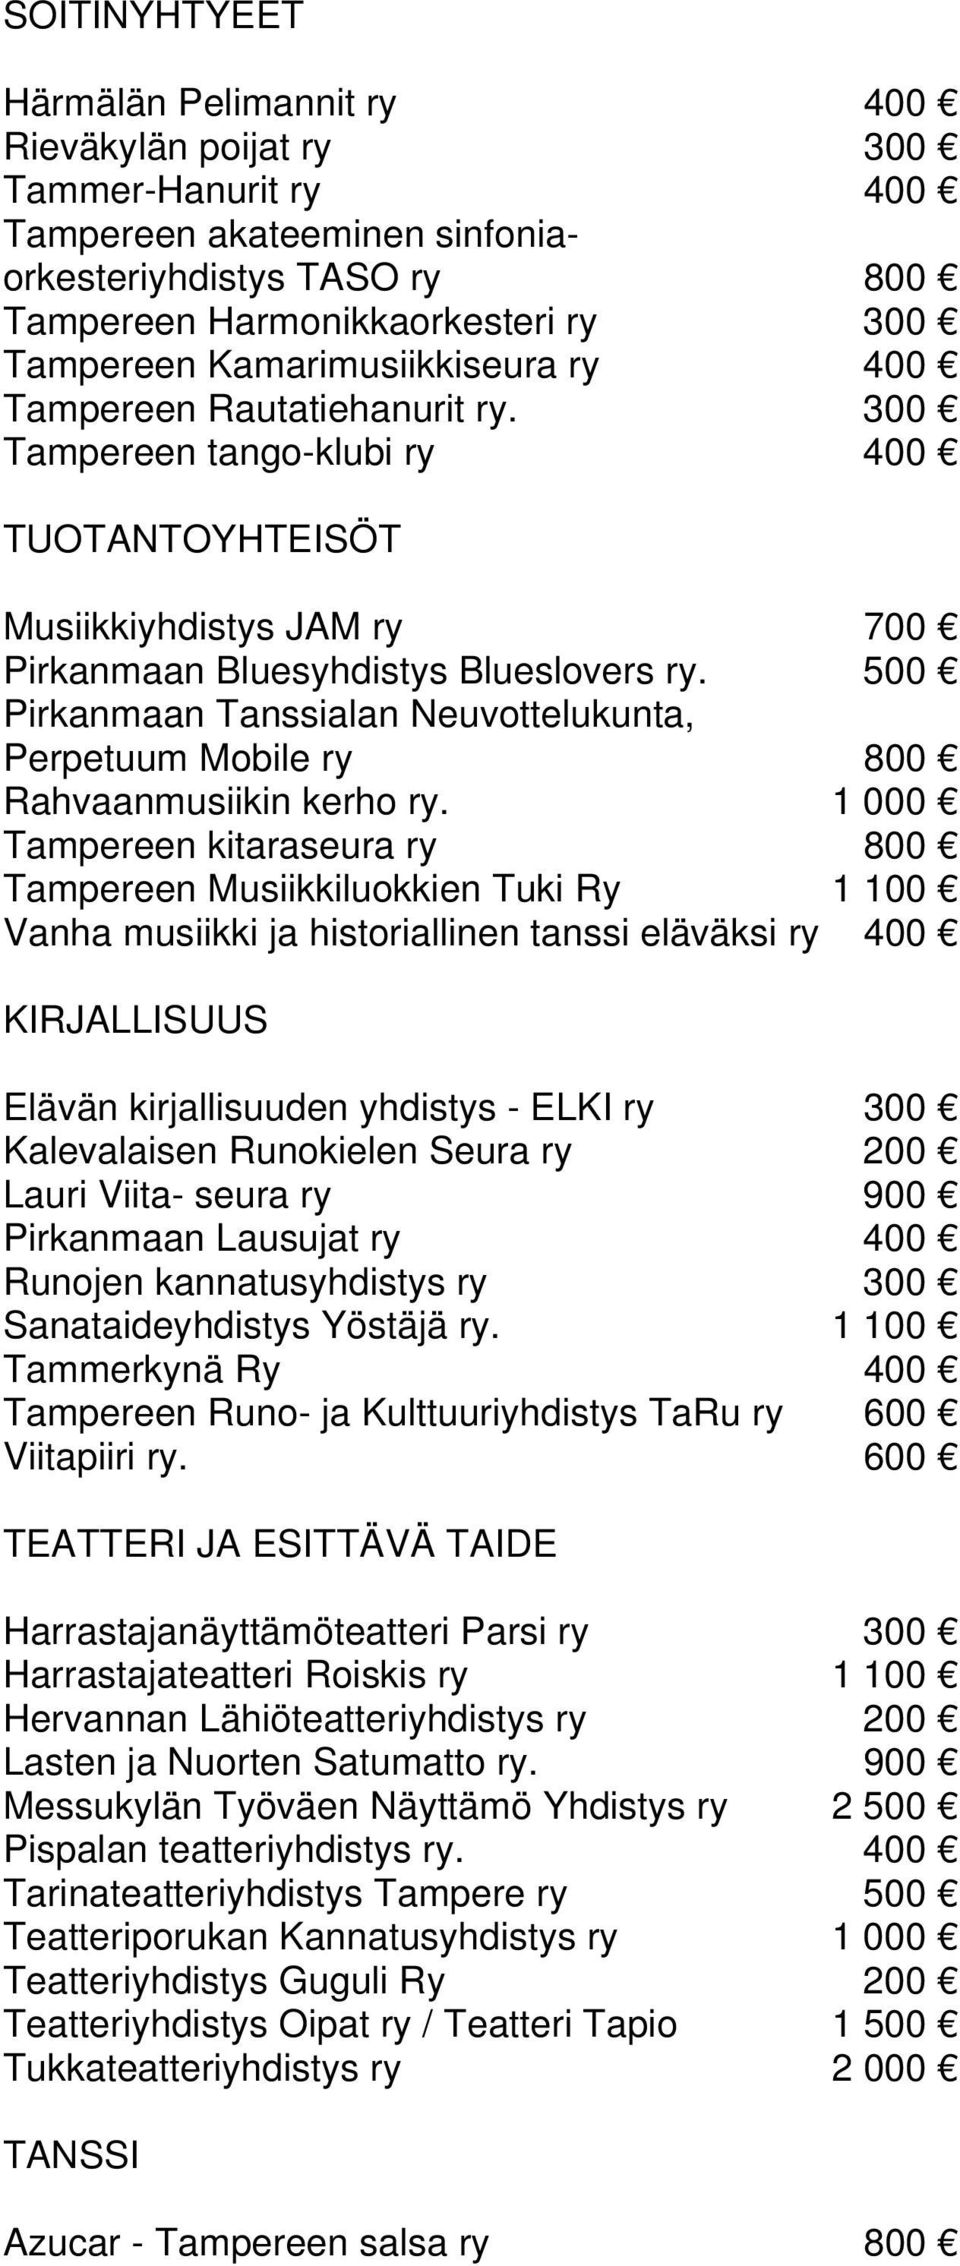 500 Pirkanmaan Tanssialan Neuvottelukunta, Perpetuum Mobile ry 800 Rahvaanmusiikin kerho ry.